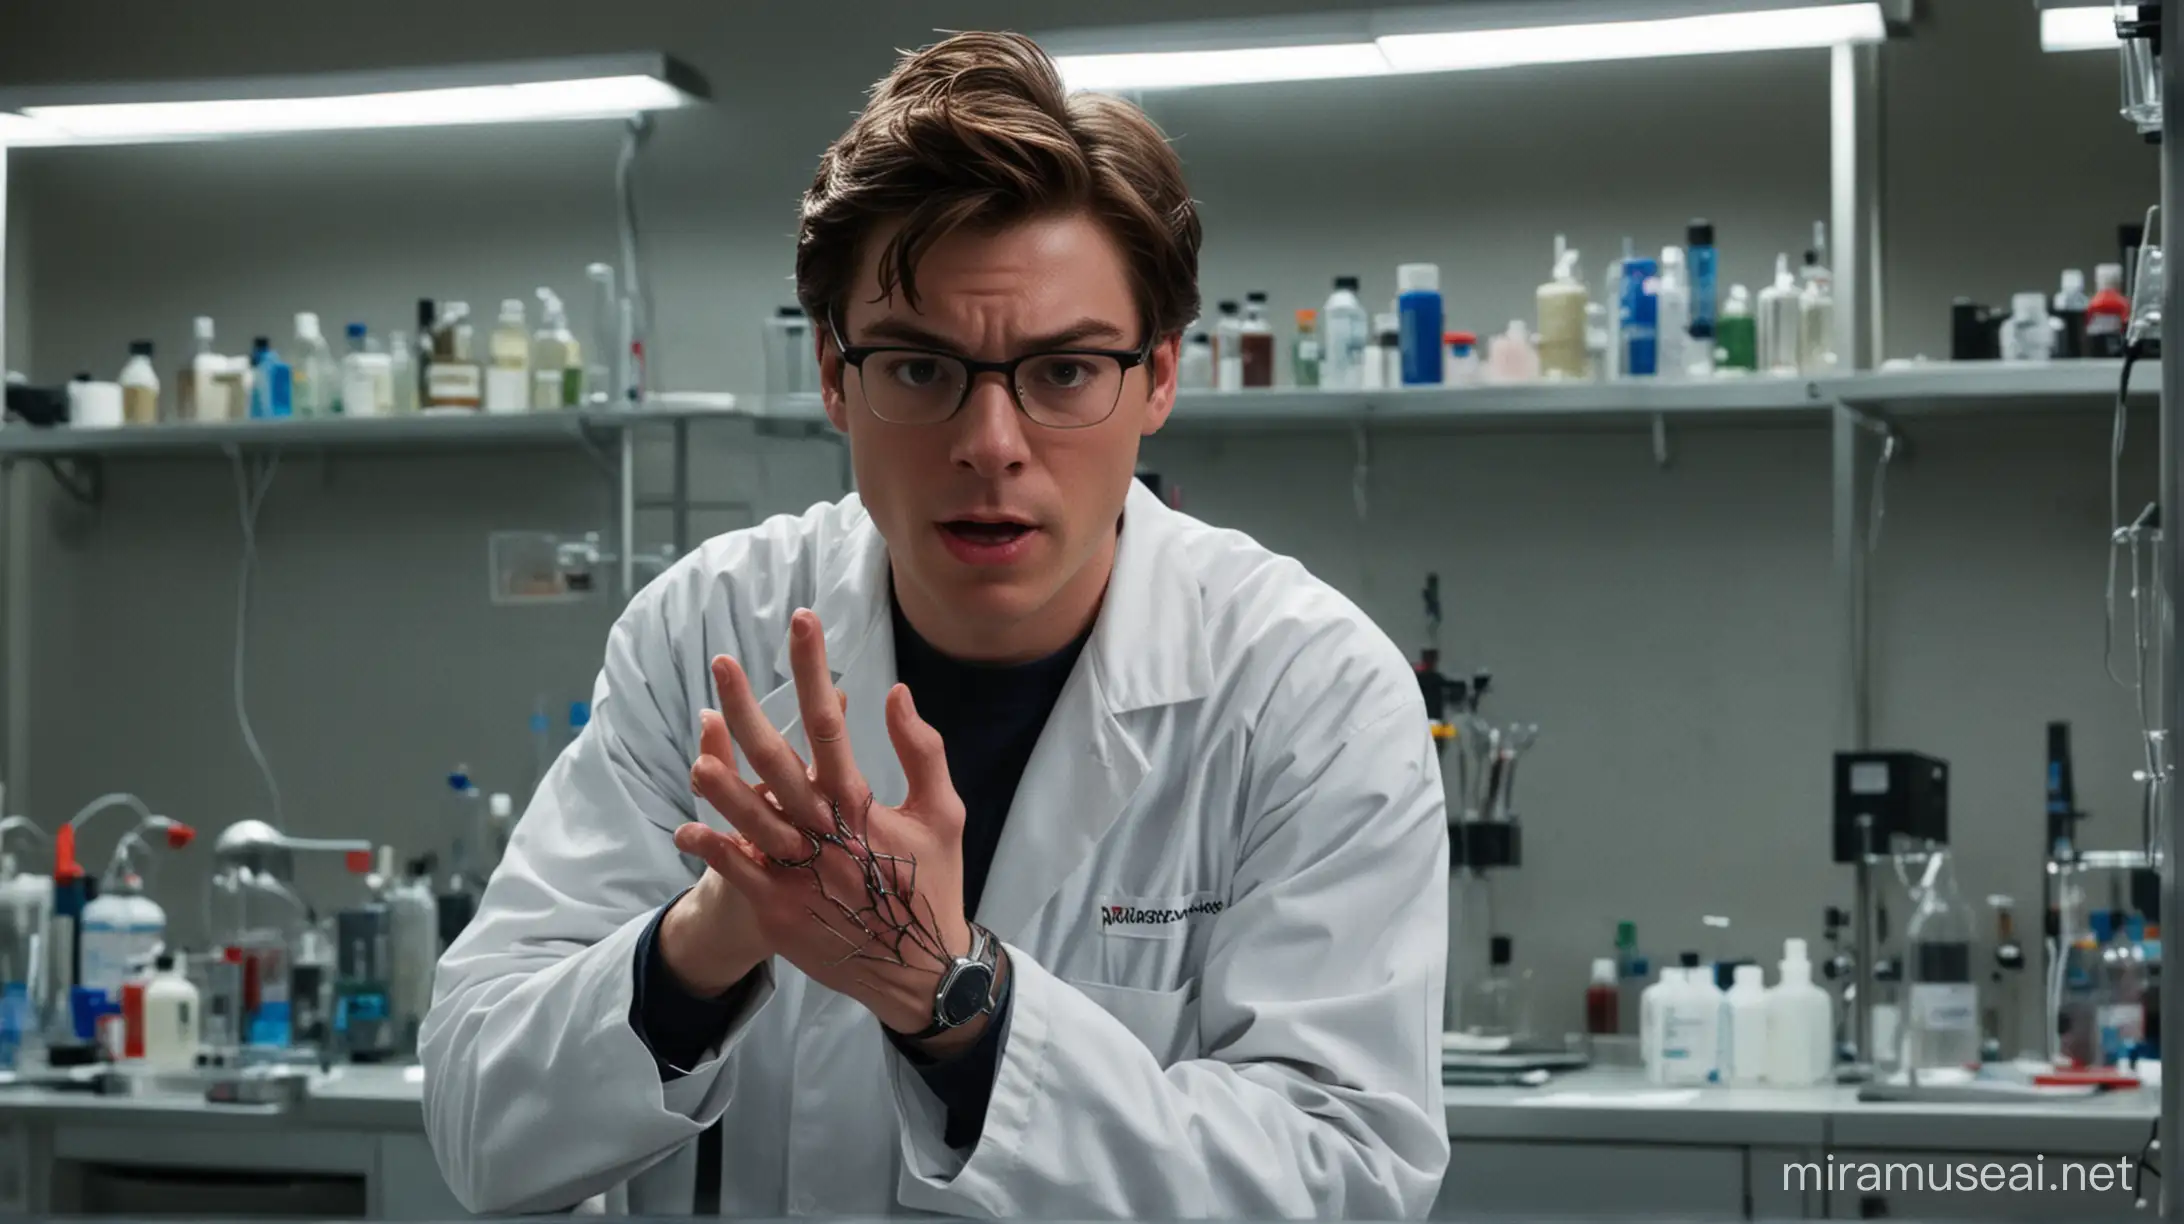 Peter parker di laboratorium ,melihat tangannya,kesakitan